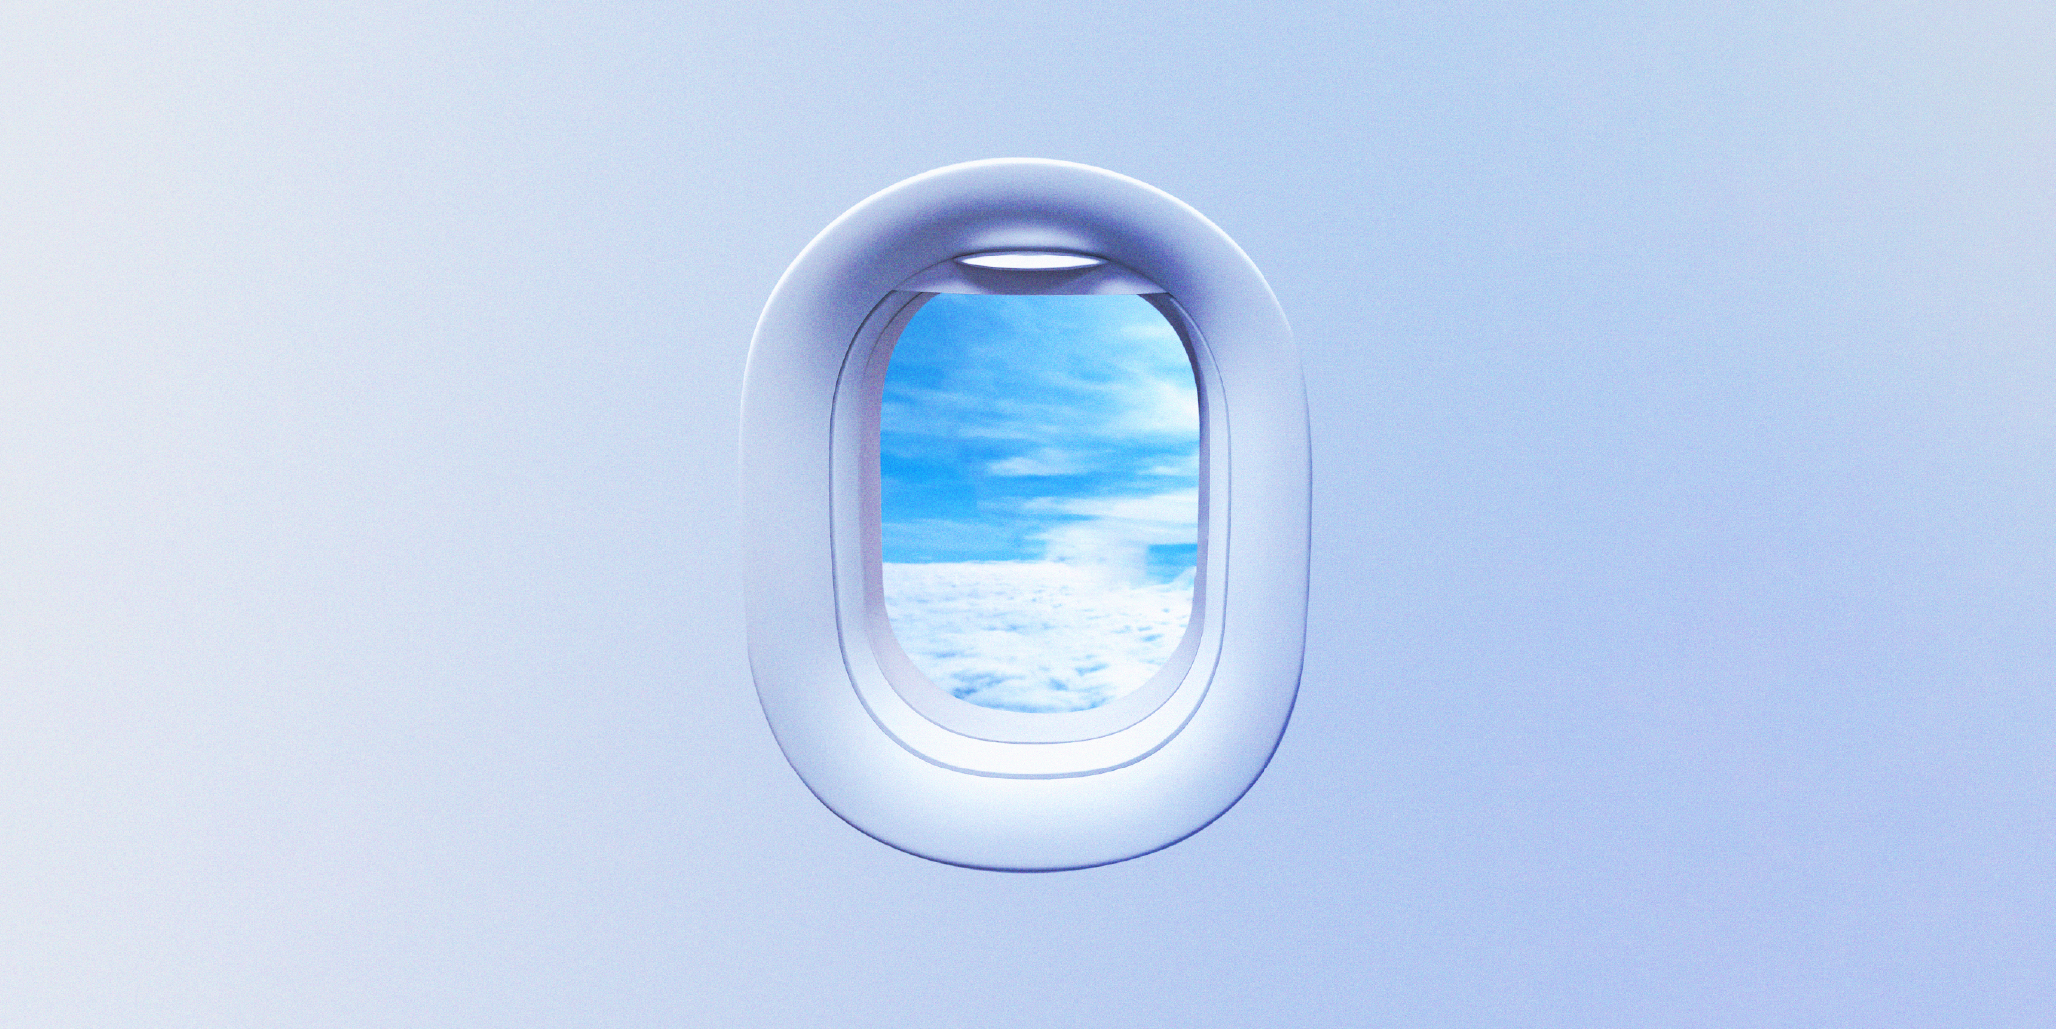 خلفية بيضاء و فيها شاشة الطائرة